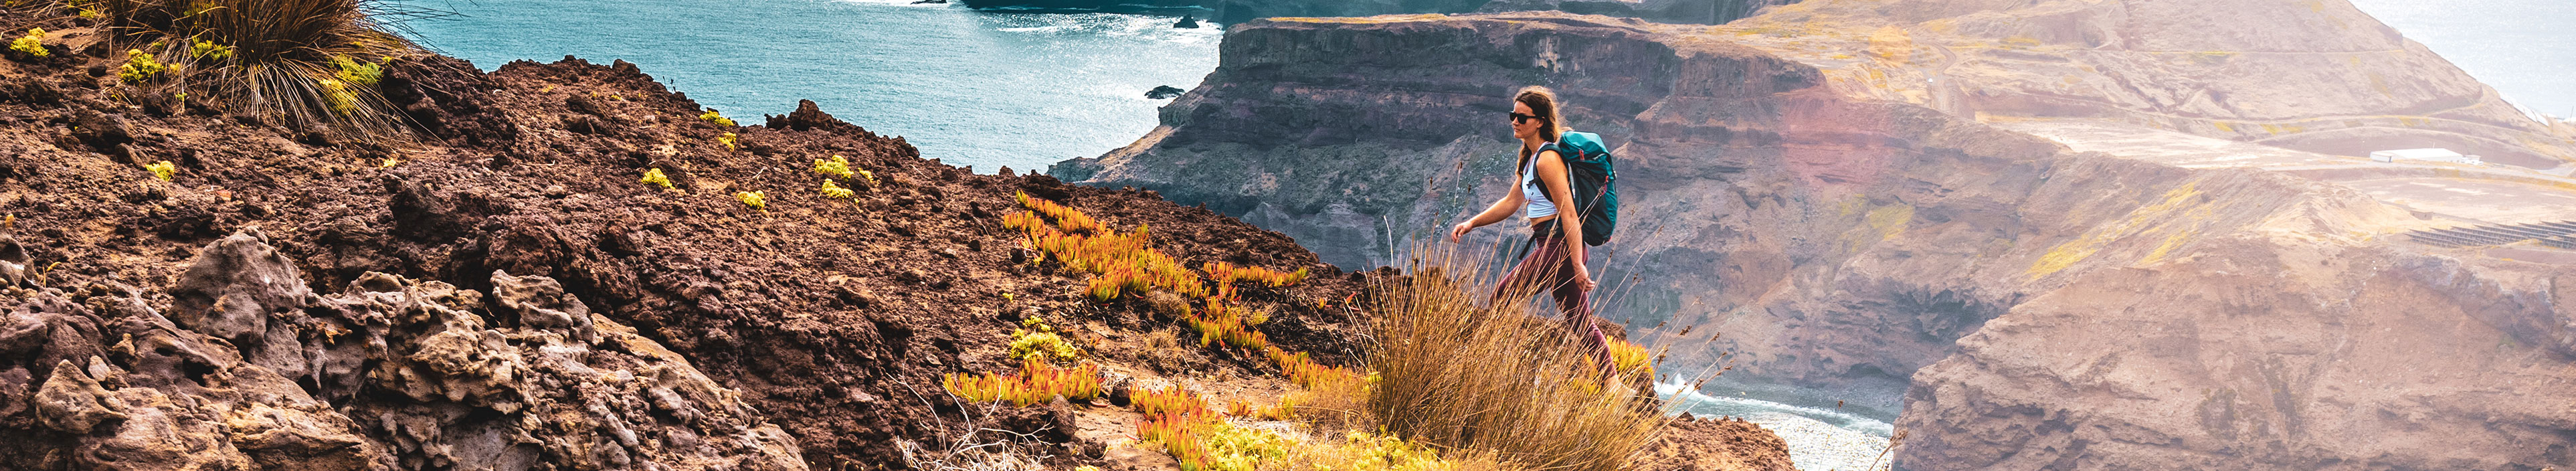 Eine Rucksacktouristin genießt die morgendliche Wanderung entlang einer steilen Klippe mit Blick auf das Meer und die zerklüfteten Ausläufer der Küste Madeiras.